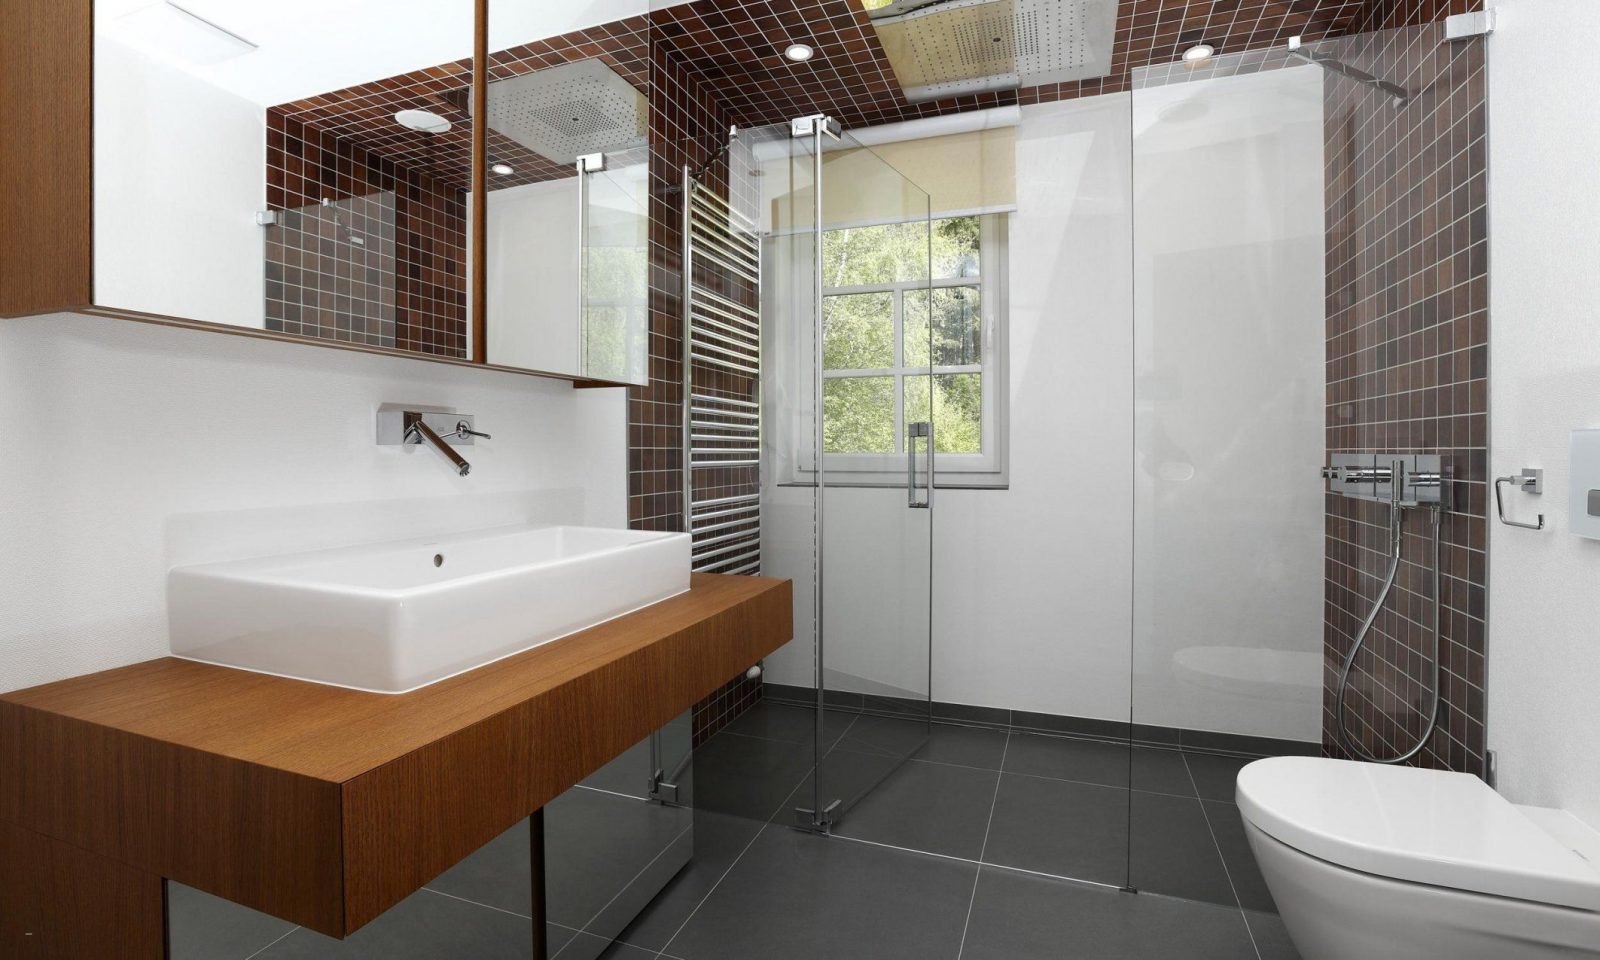 Modernes Badezimmer Ohne Fliesen Schön Haus Design Ideen von Modernes Badezimmer Ohne Fliesen Bild